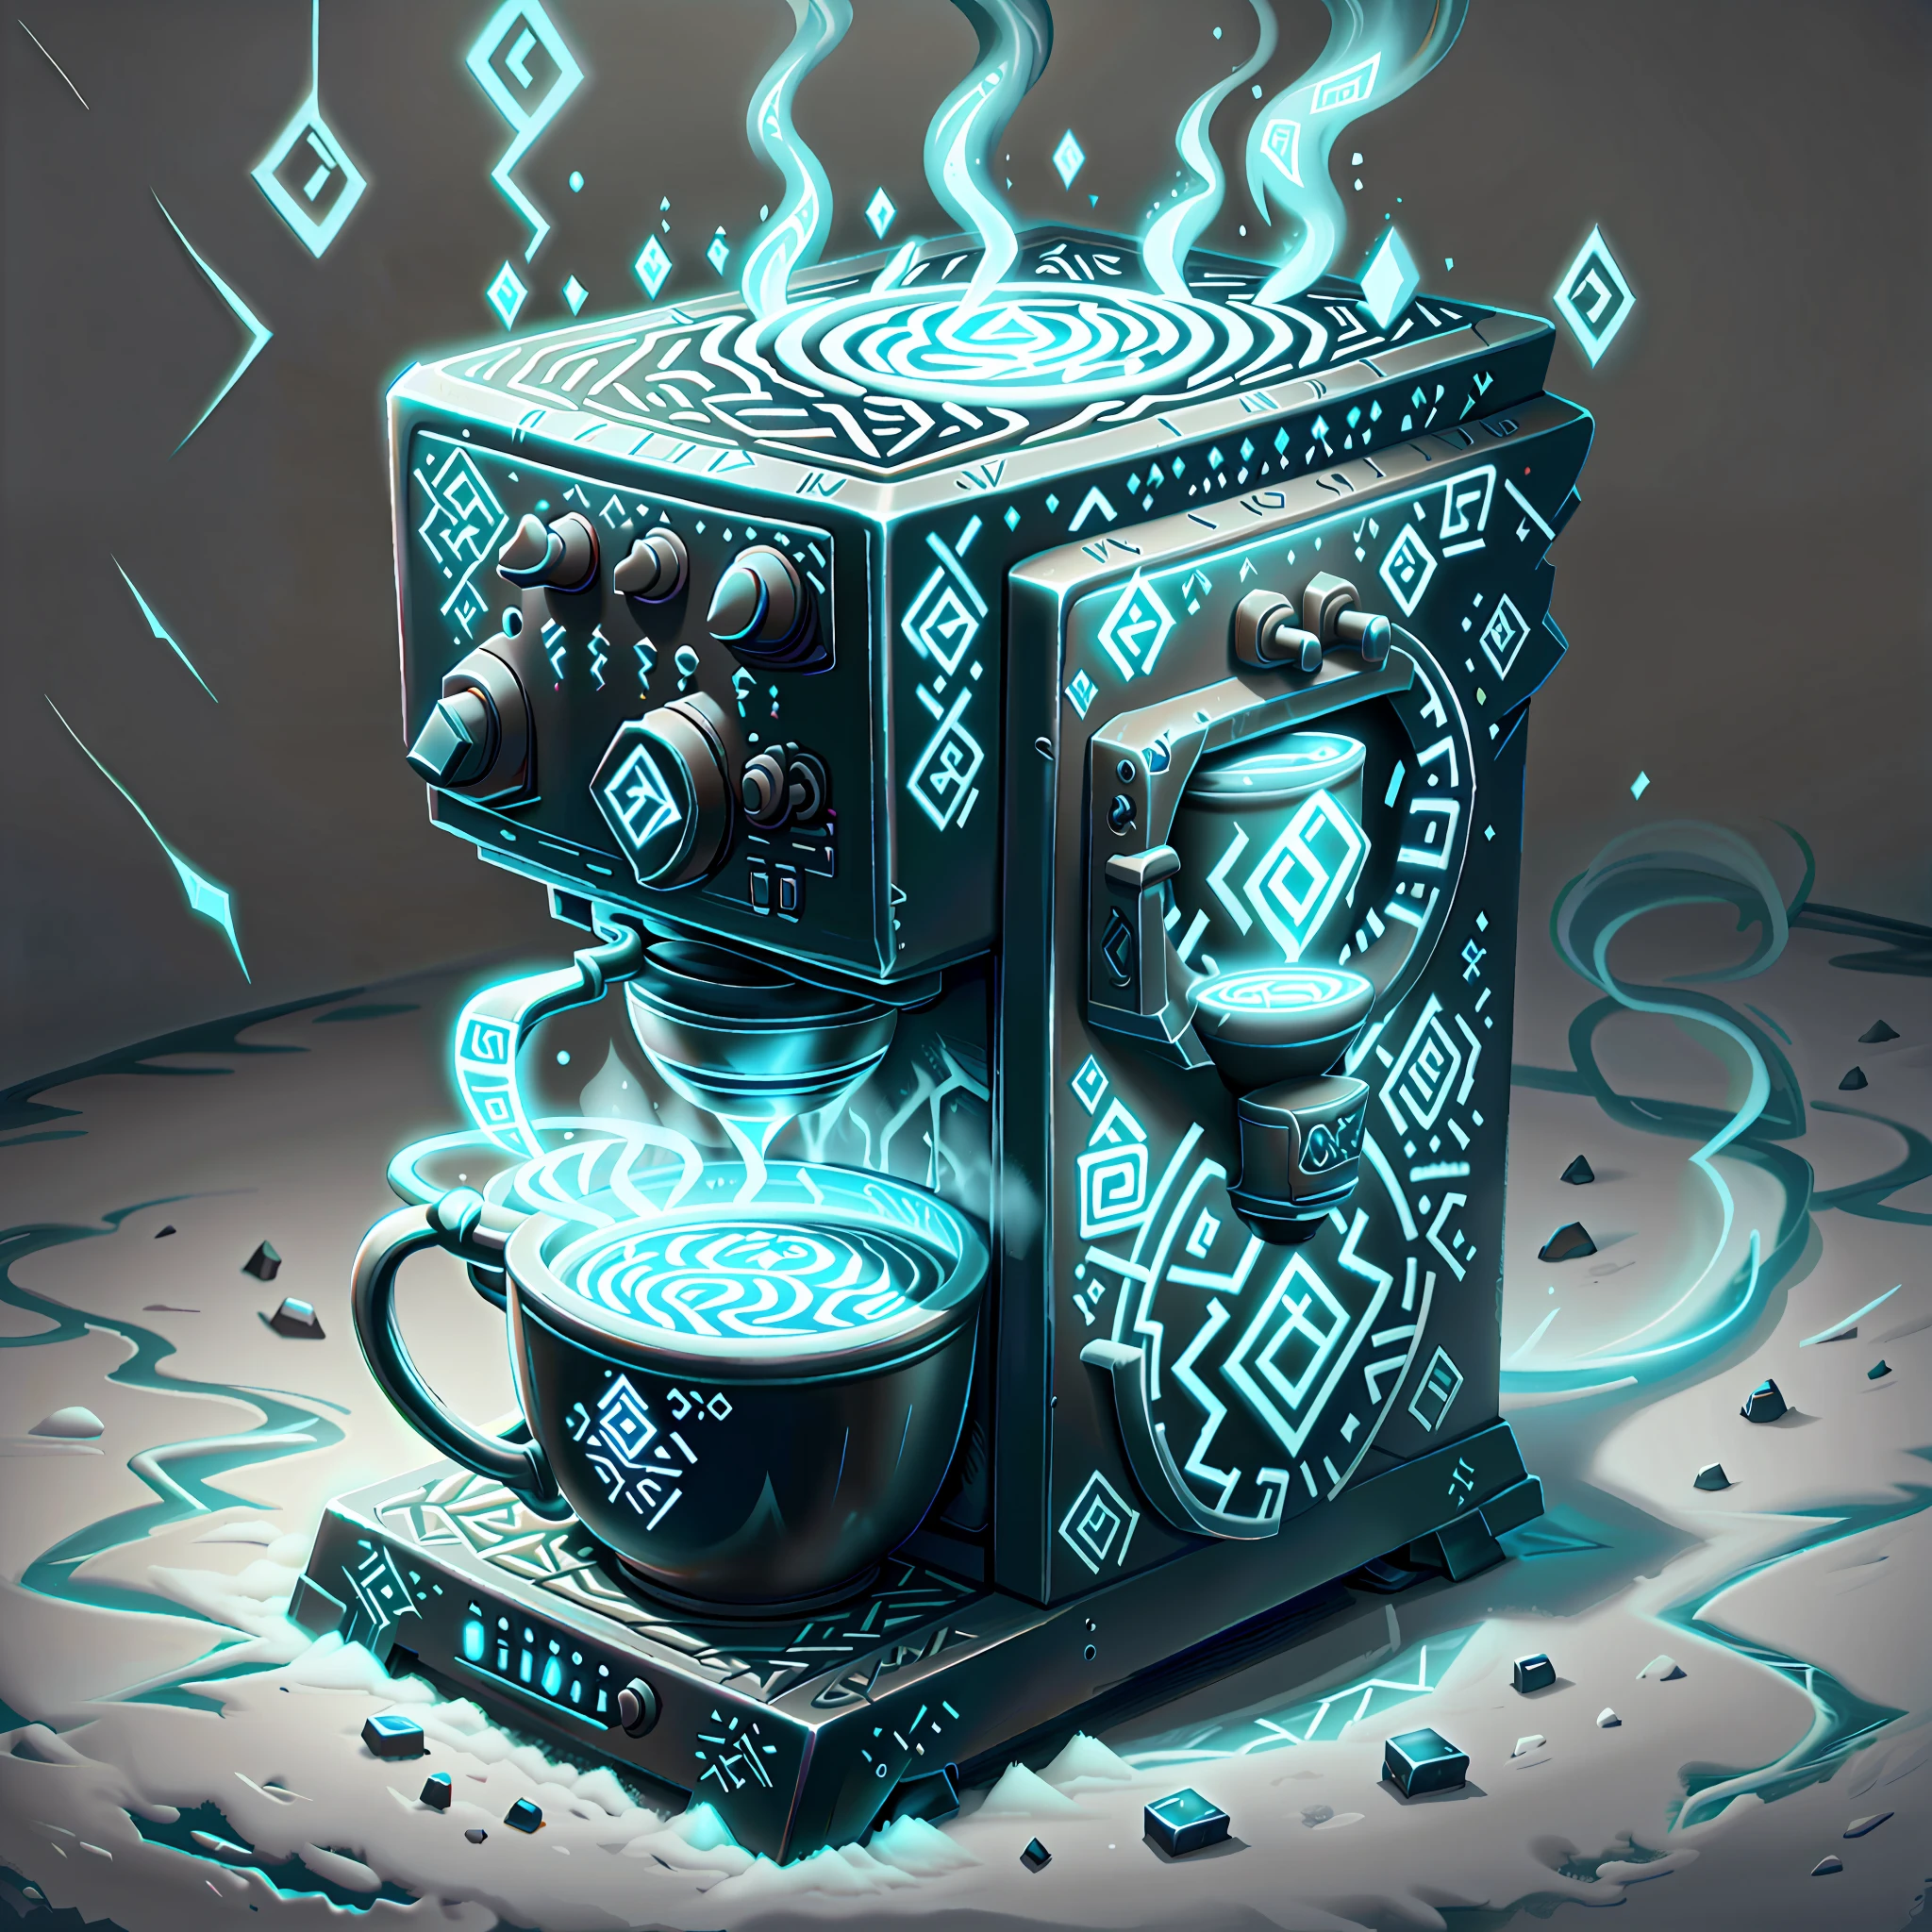 (冰魔法:0.6), 发光符文AIV2_淡蓝, 2000 年代的咖啡机